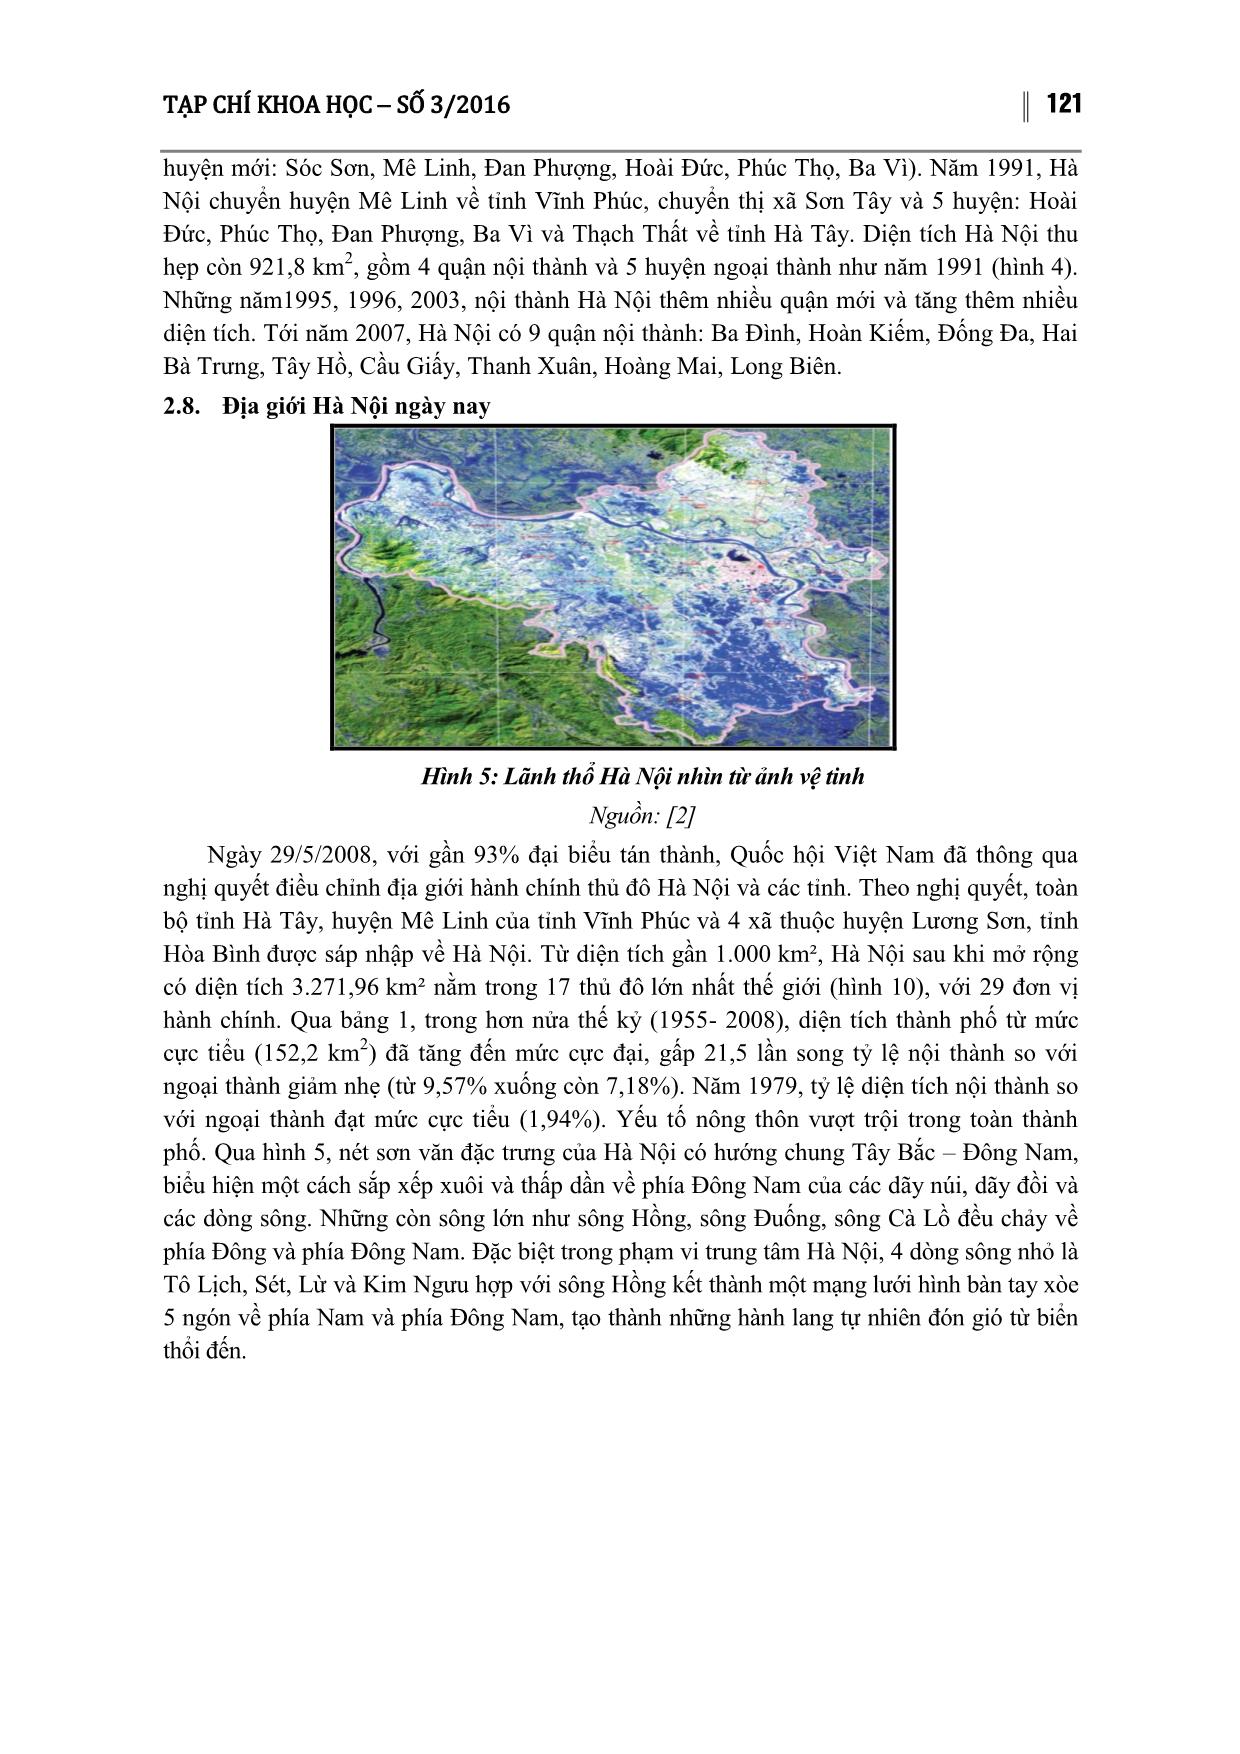 Biến động địa giới thành phố Hà Nội qua các thời kỳ lịch sử trang 6